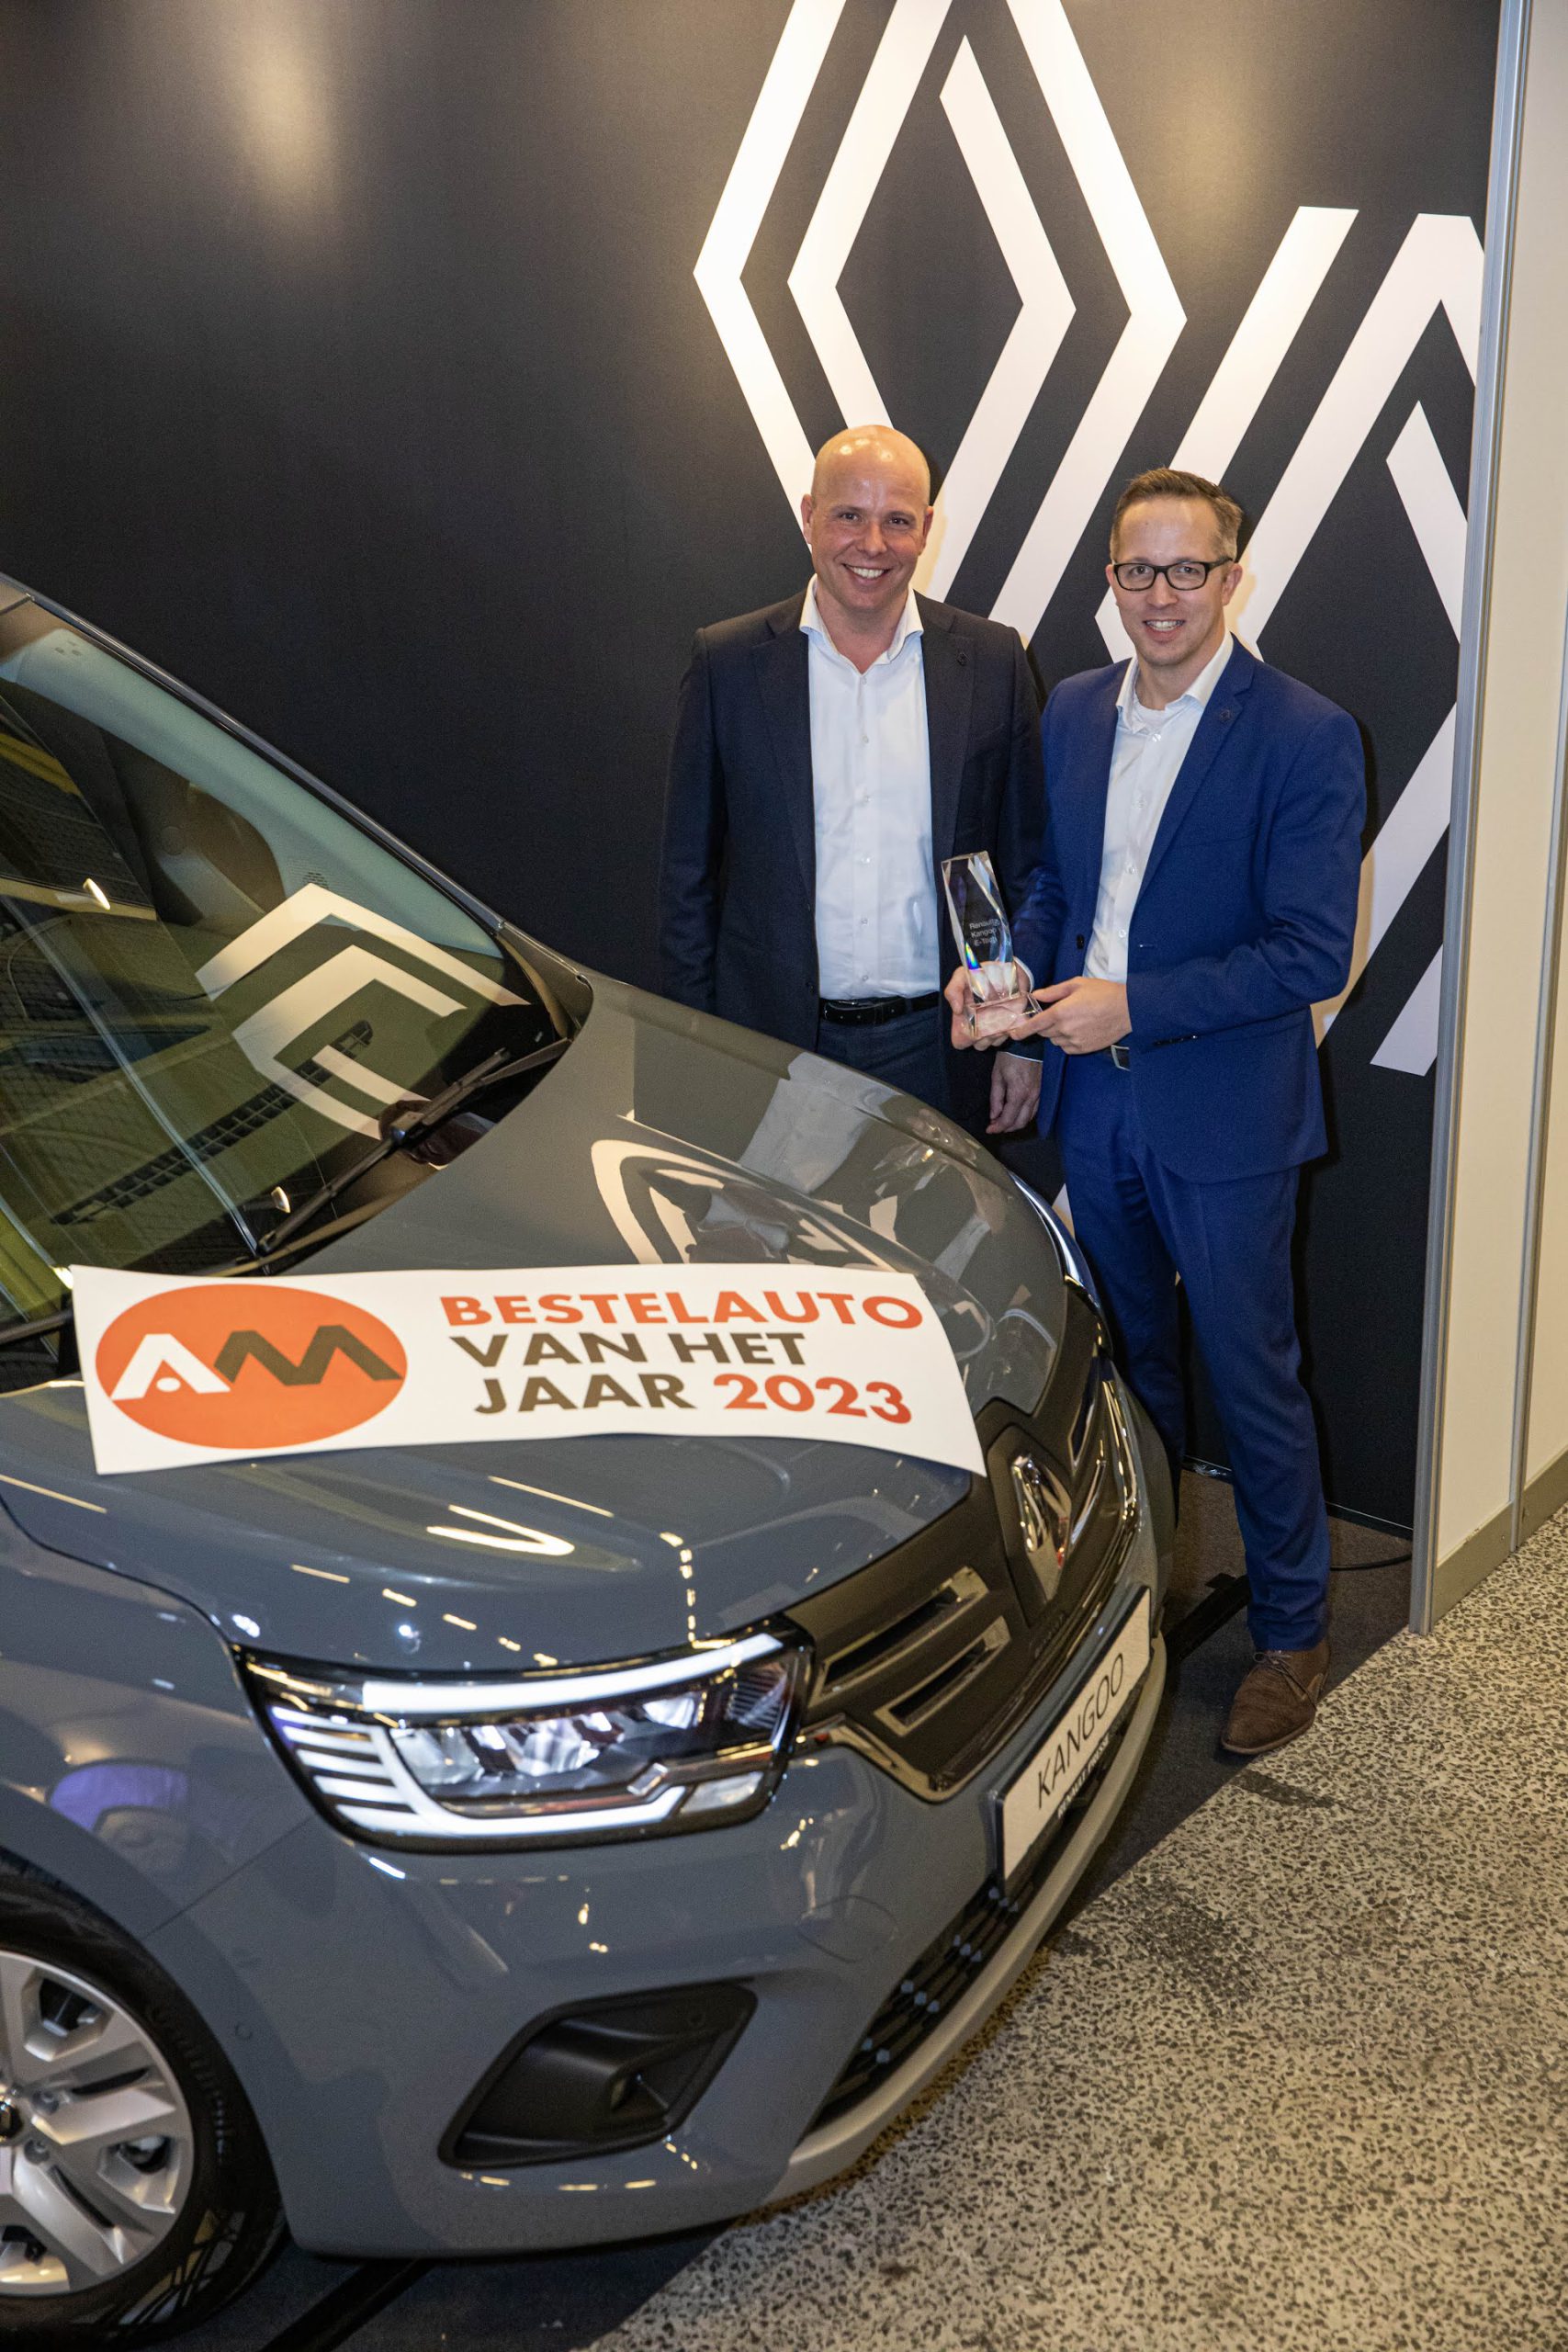 Renault Kangoo E-Tech verkozen tot Bestelauto van het Jaar 2023